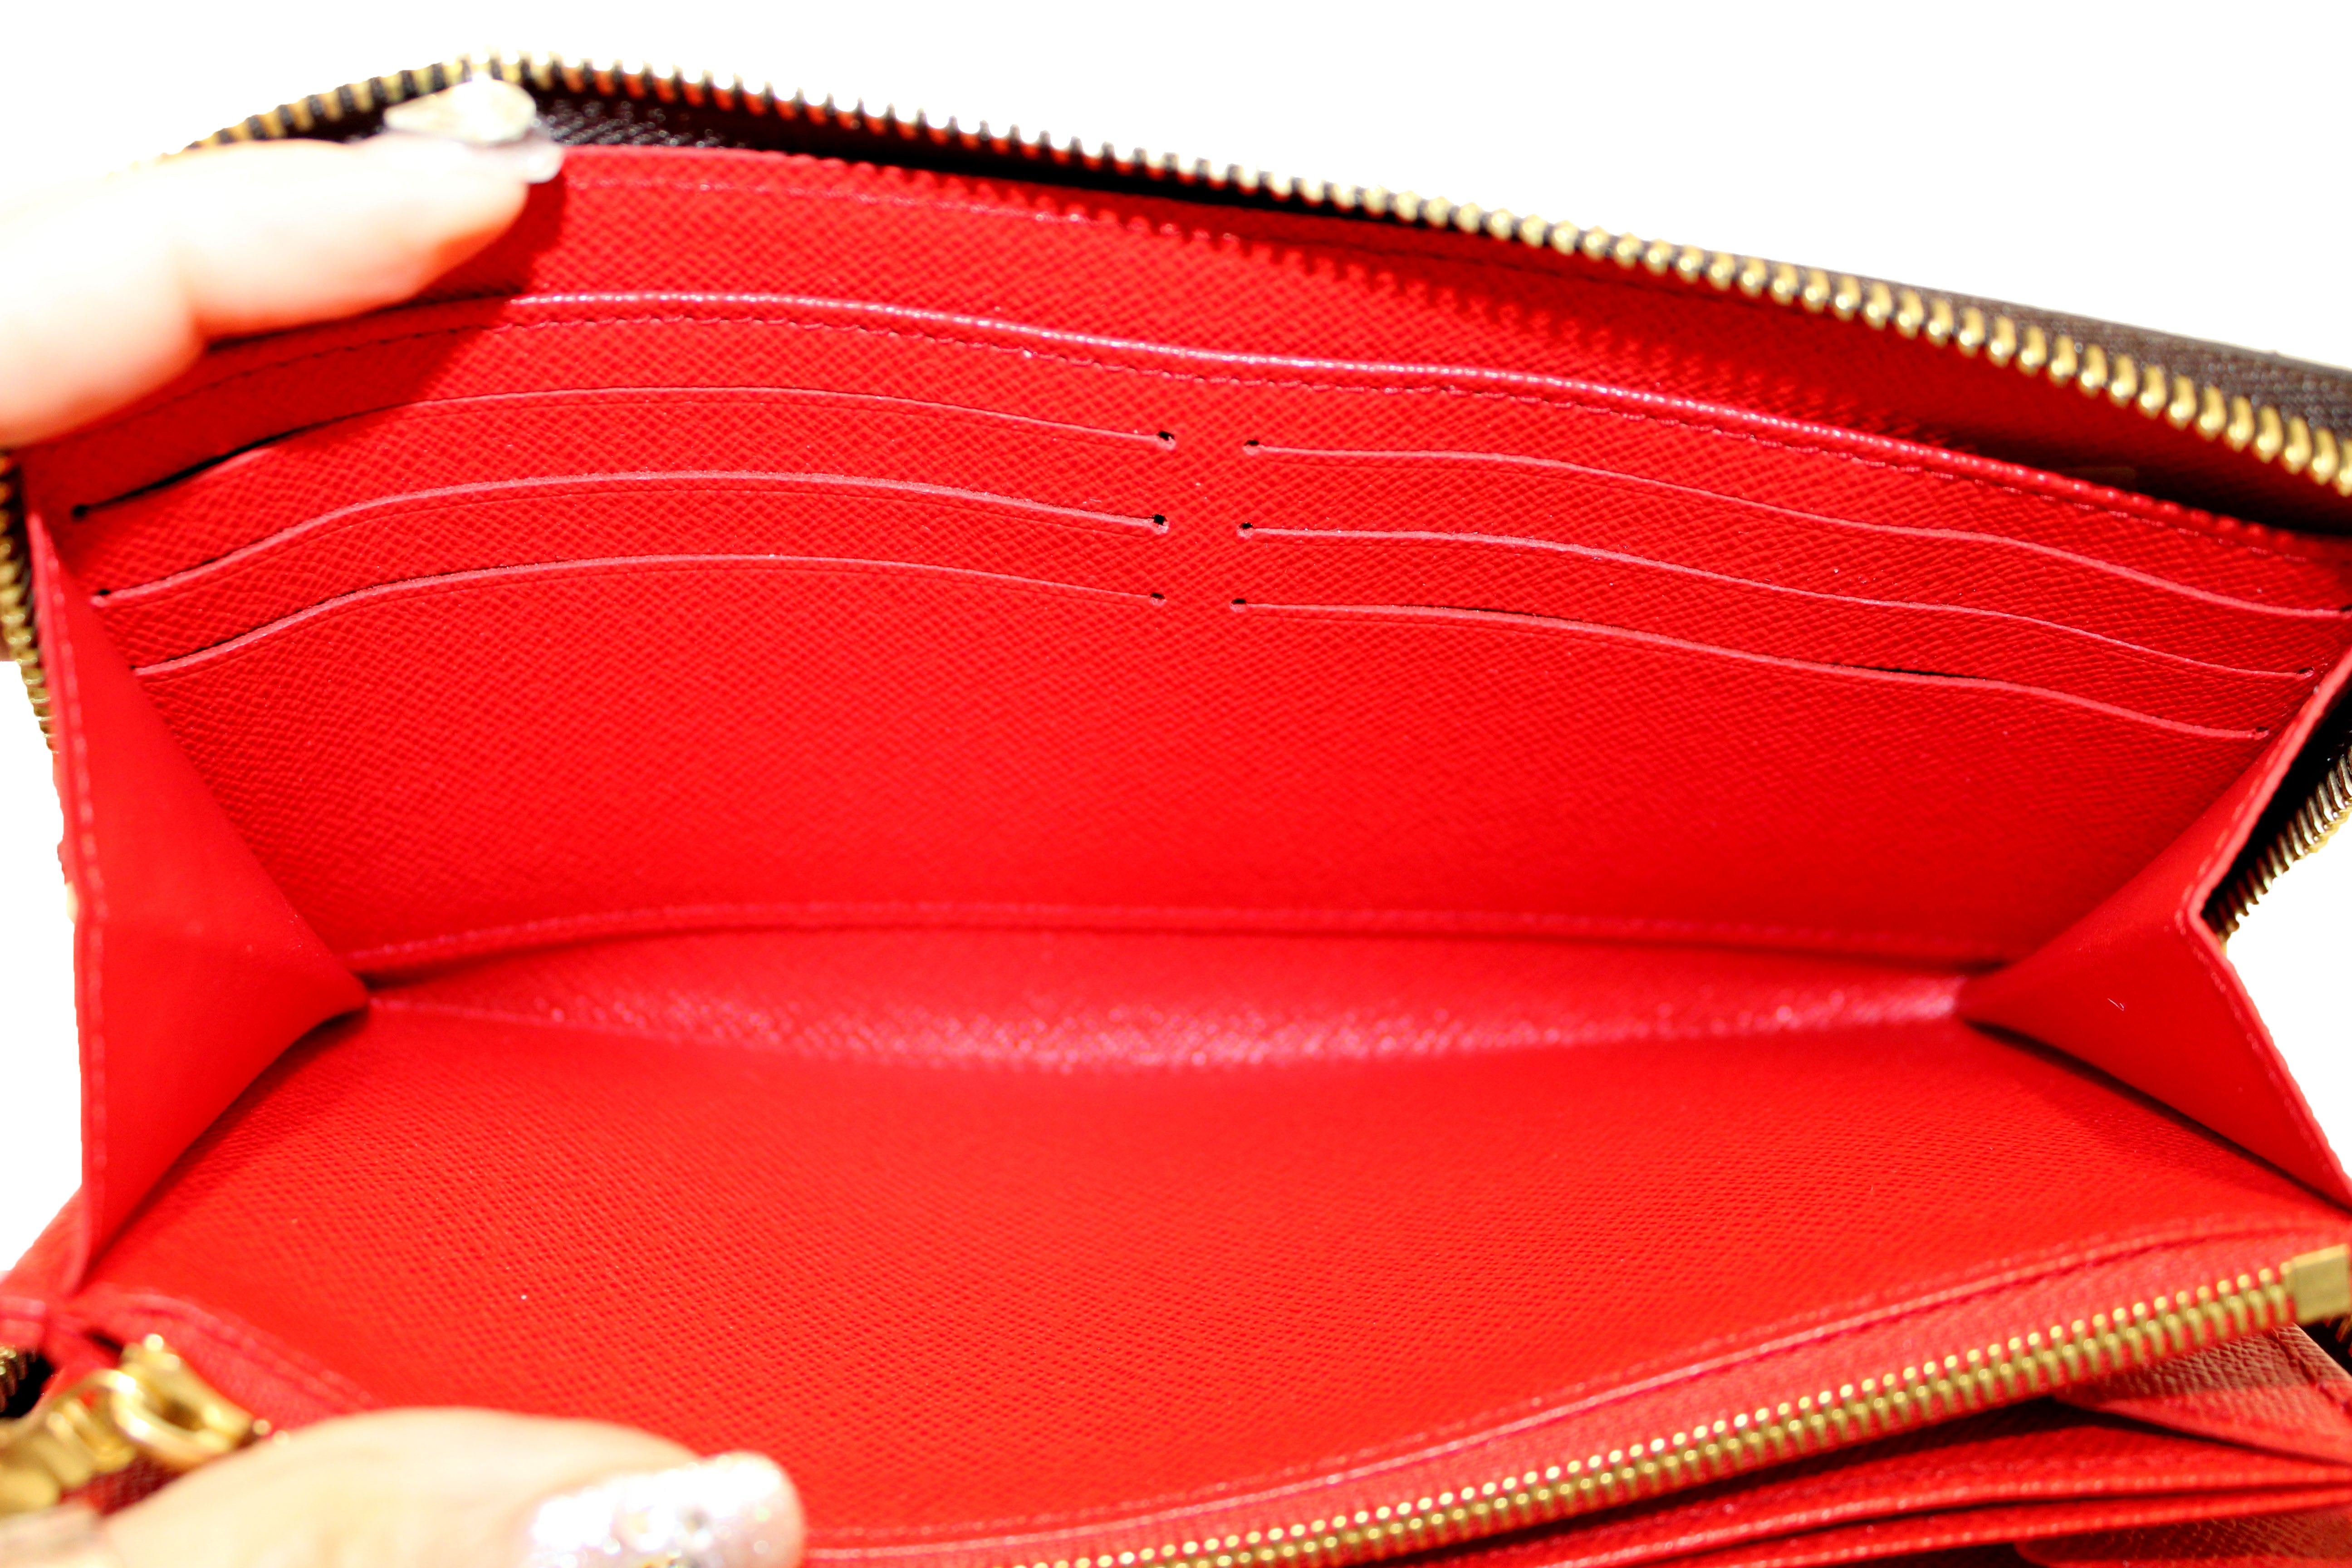 louis-vuitton wallet women authentic zippy